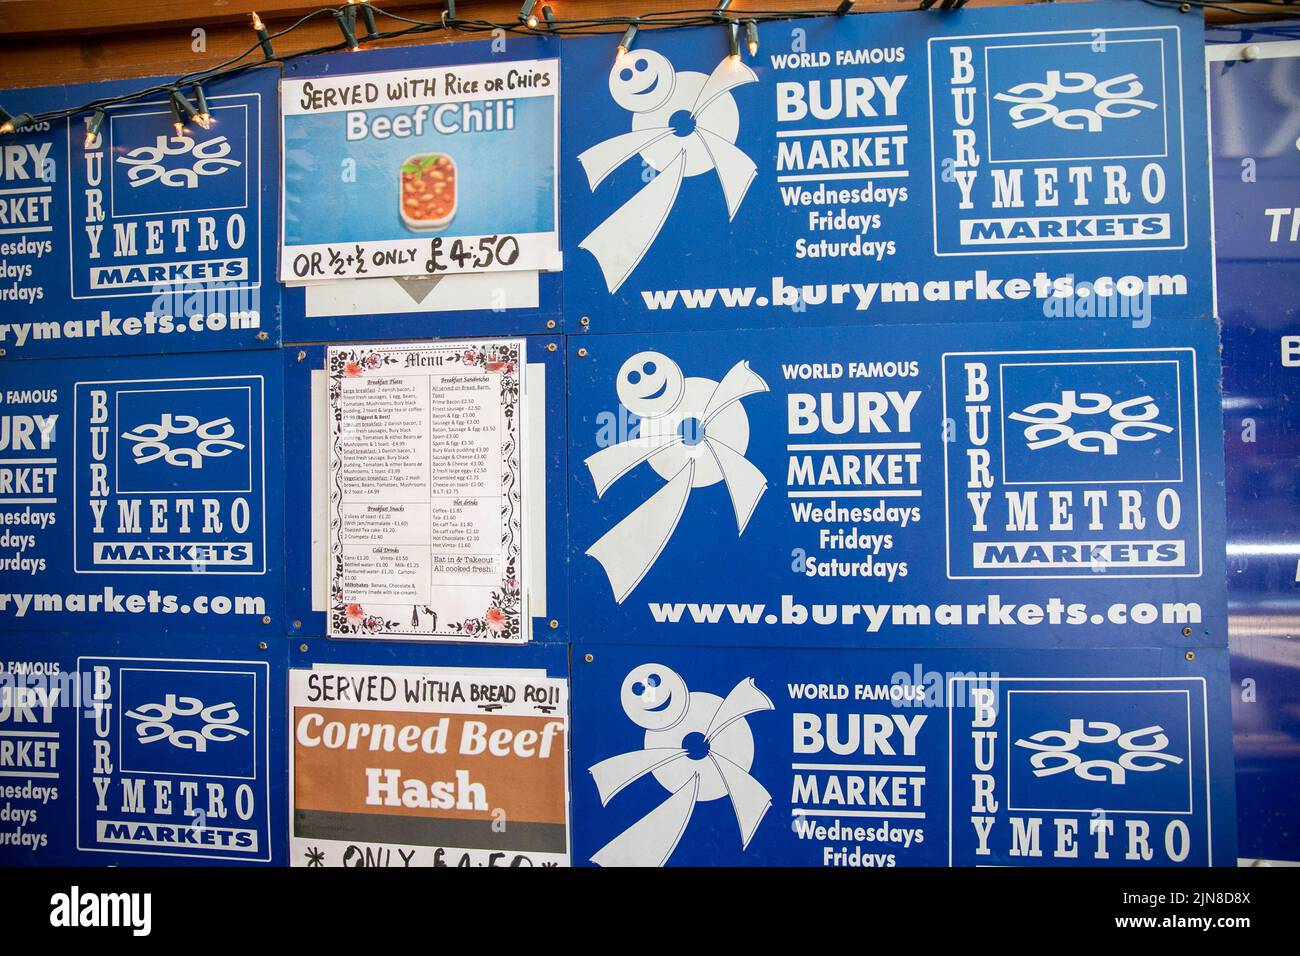 Bury wold famoso mercado, la venta de purdines negro y corned beef hash menú, Bury, Manchester, Reino Unido, 2022 Foto de stock